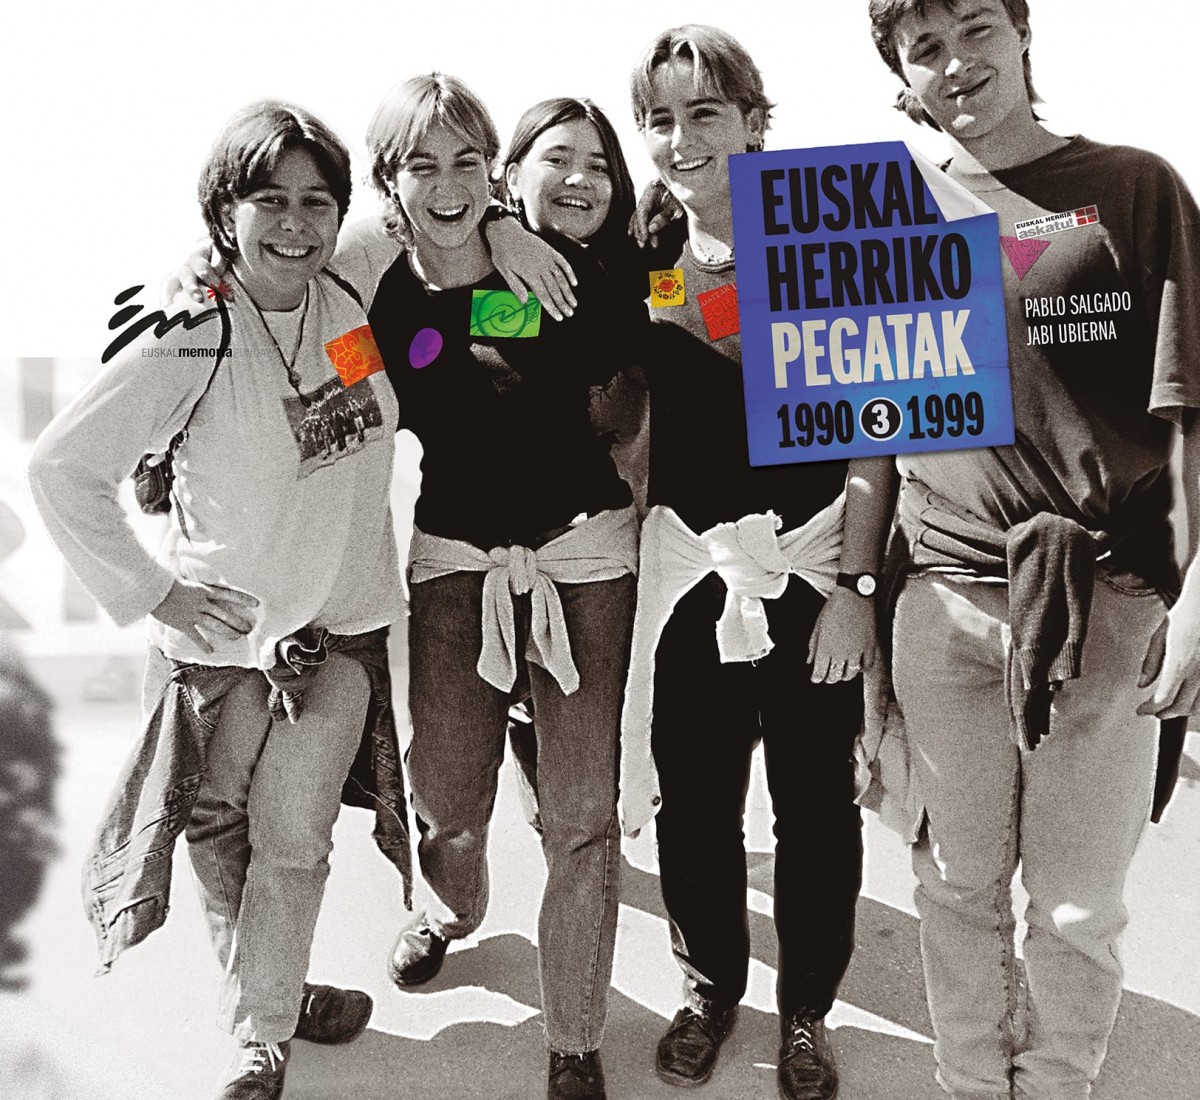 Euskal Herriko Pegatak 3 (1990-1999)